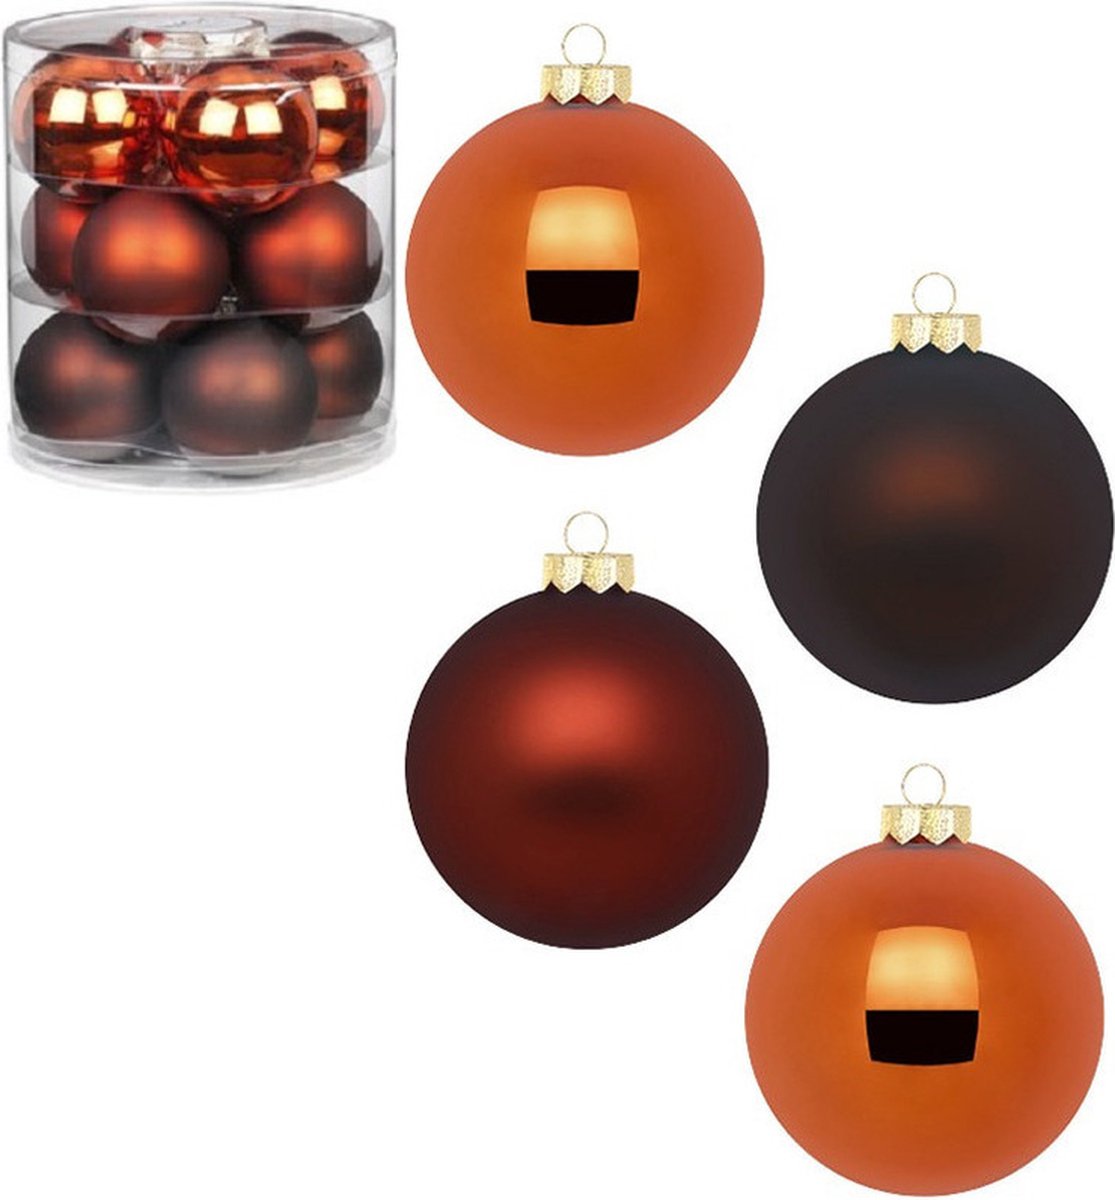 36x stuks glazen kerstballen kastanje bruin 8 cm glans en mat - Kerstboomversiering/kerstversiering